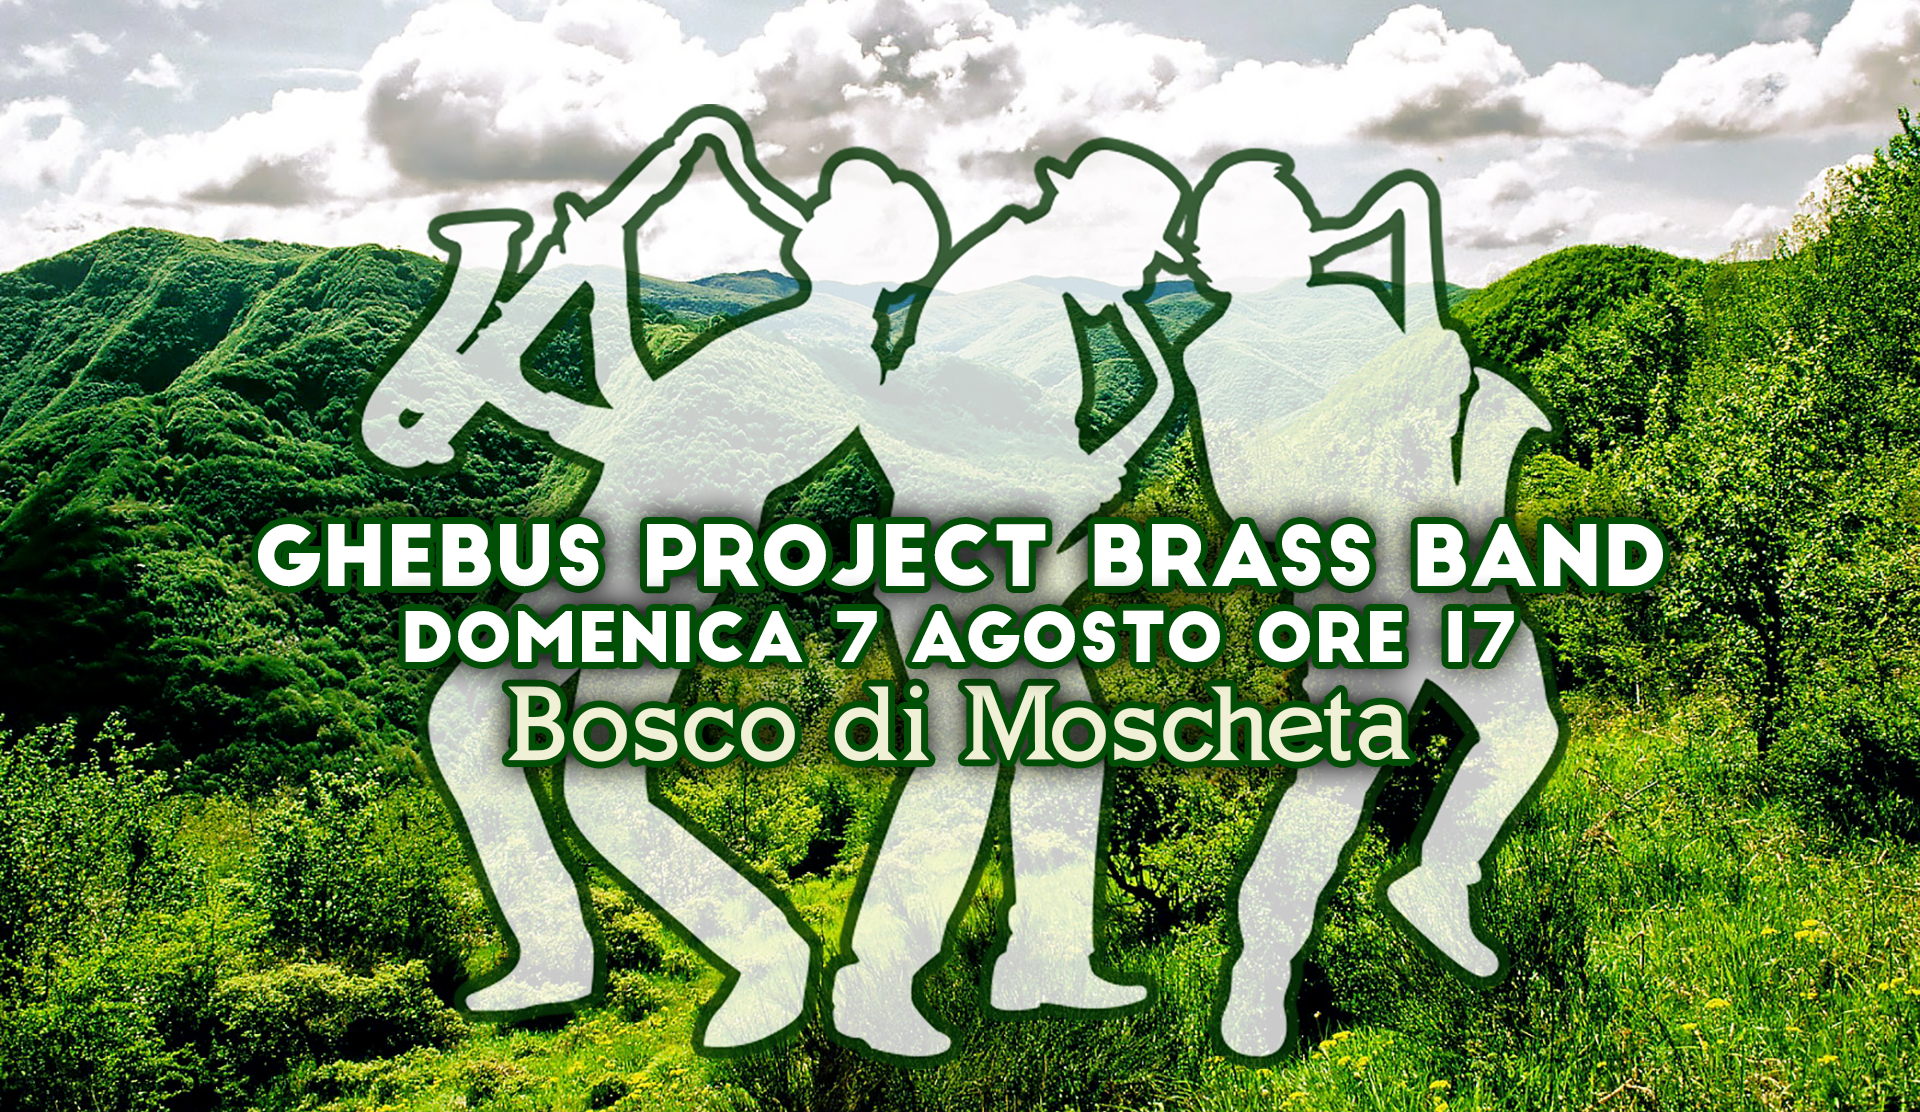 Ghebus Project Brass Band Domenica 7 Agosto ore 17 Bosco di Moscheta